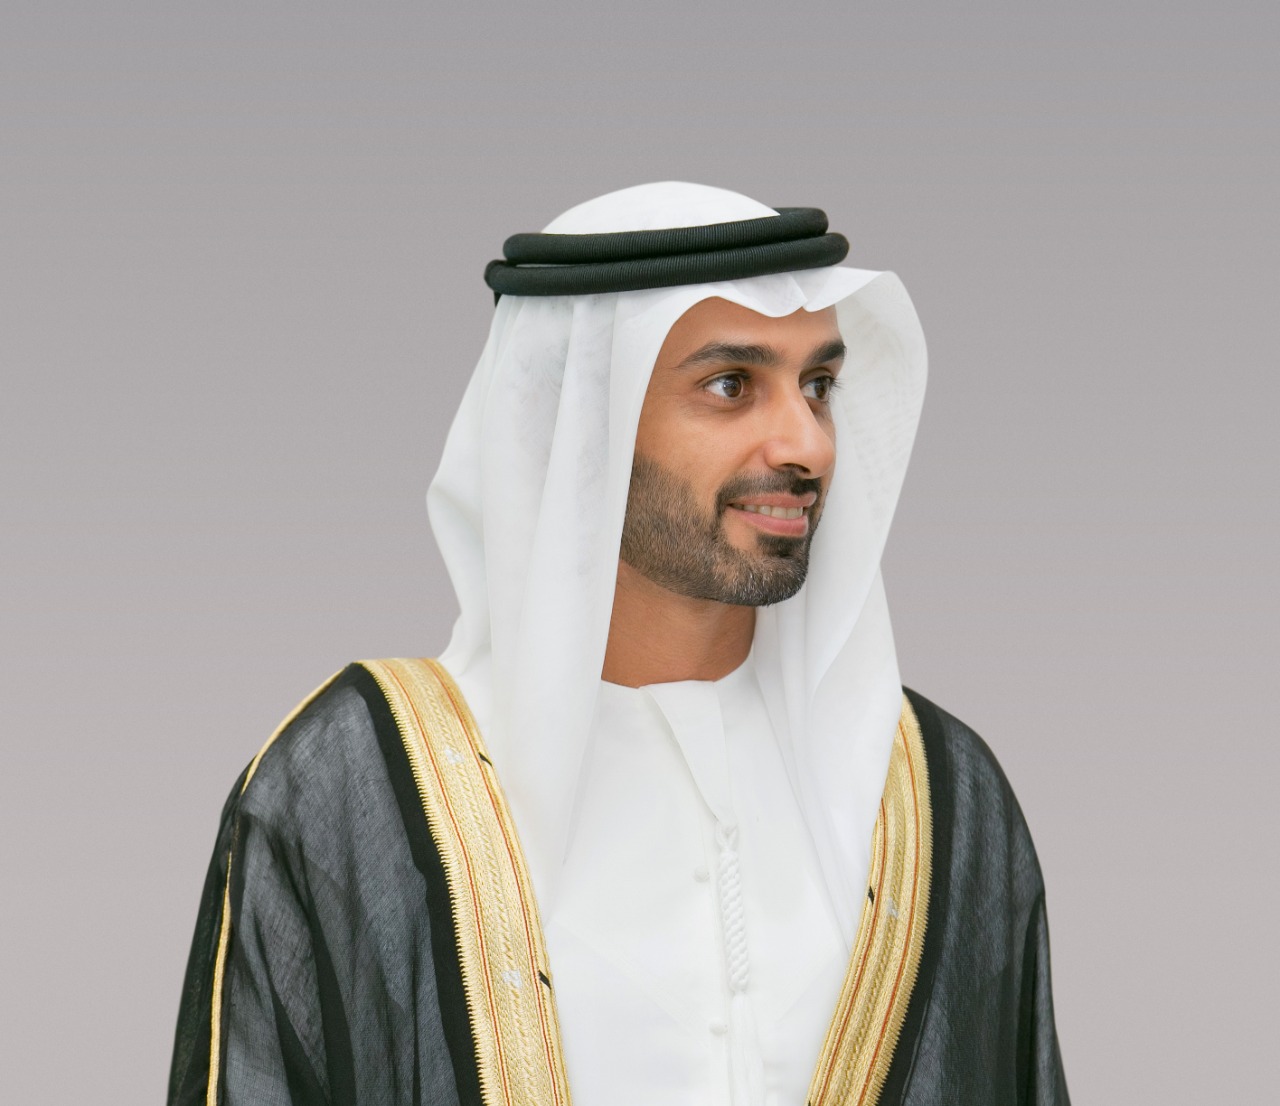 ‫أحمد بن حميد النعيمي يطلق حزمة حوافز اقتصادية لشركات منطقة عجمان الحرة‬